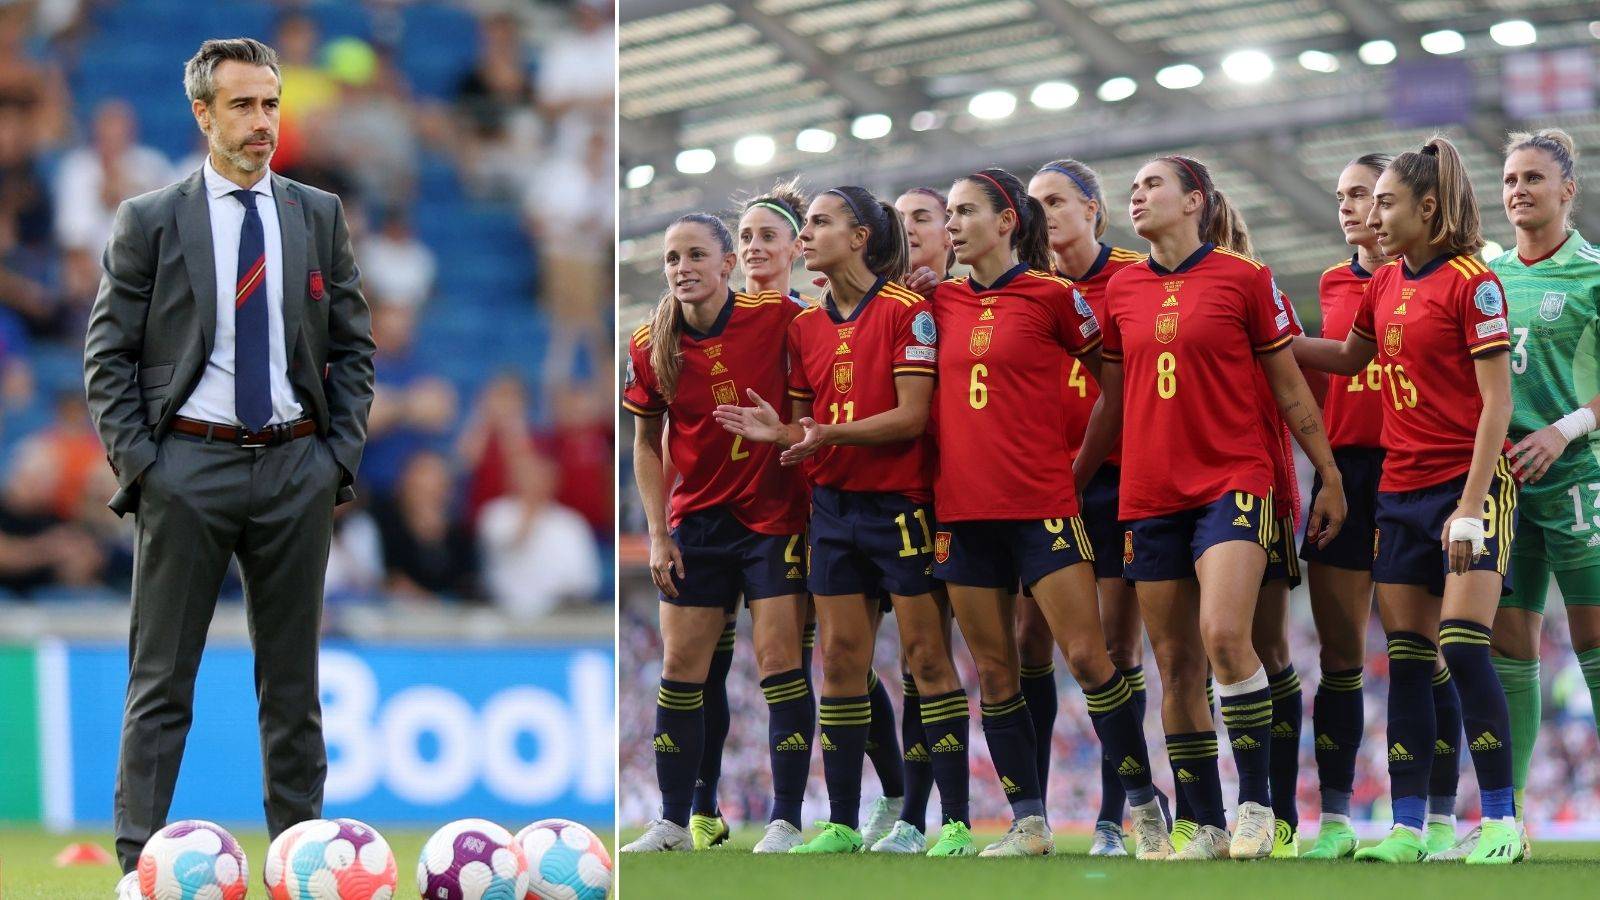 Spanish women's team